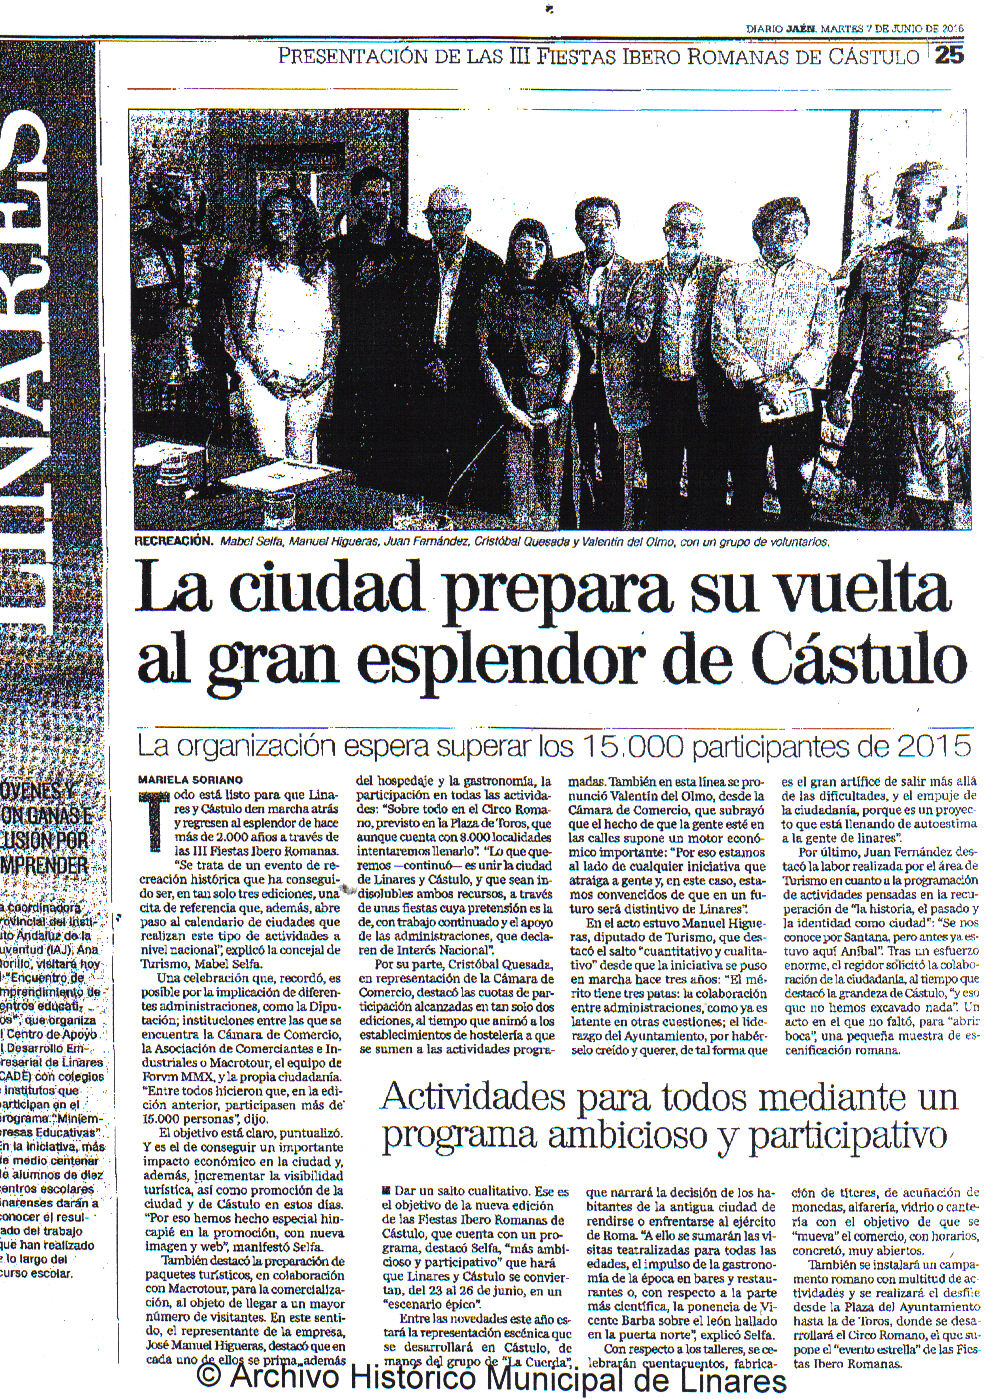 prensa Diario Jaén 7 de junio